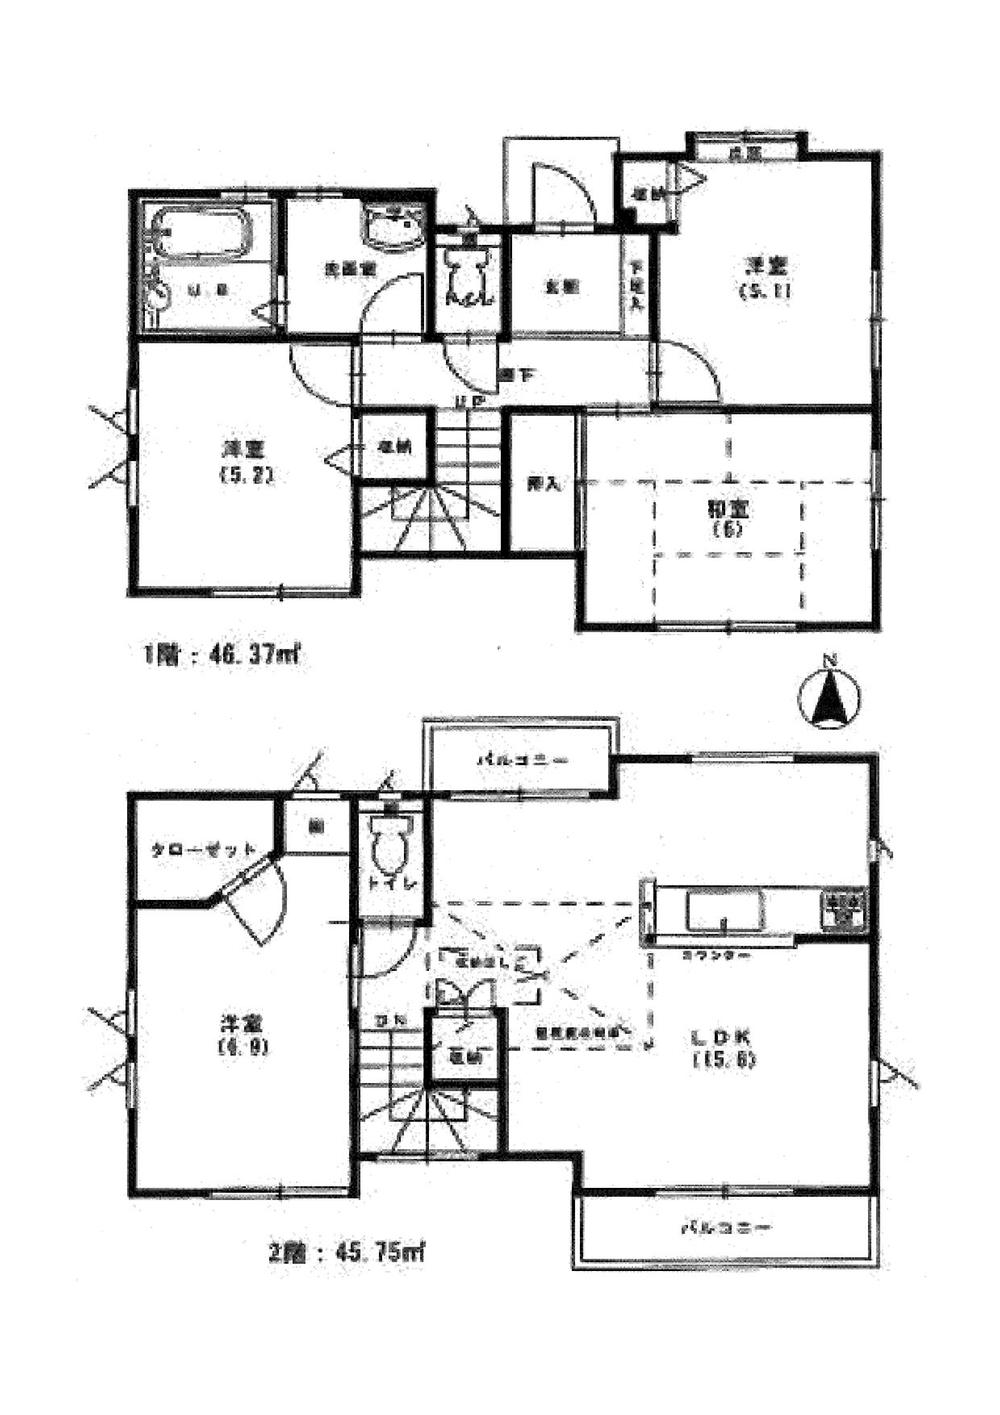 Floor plan. 21 million yen, 4LDK, Land area 121.52 sq m , Building area 92.12 sq m